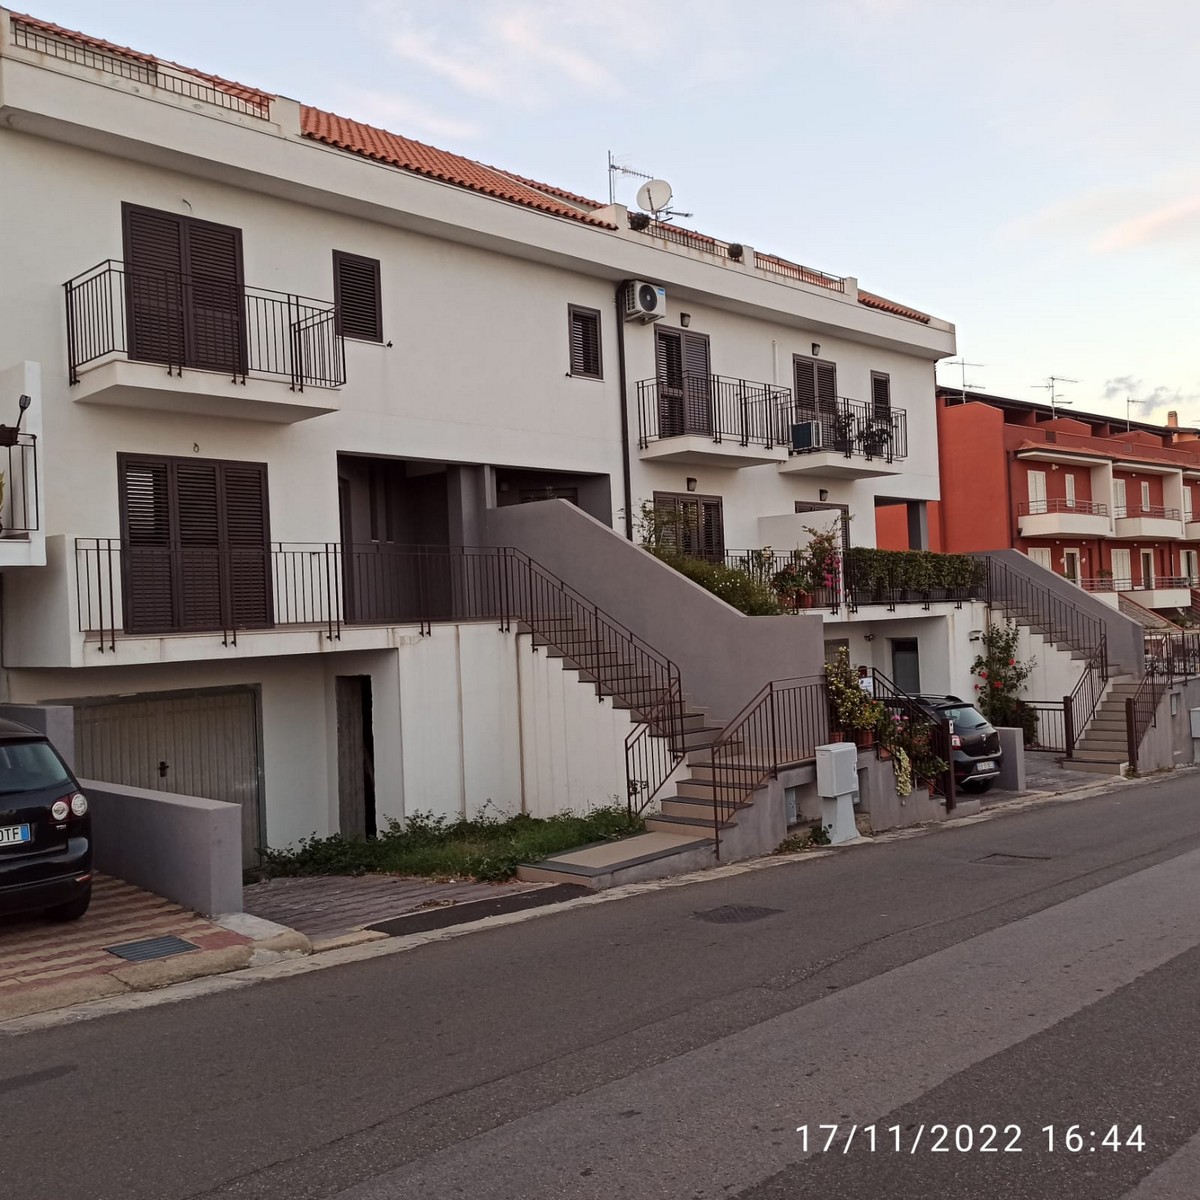 Villetta a schiera nuova costruzione – S. Teresa di Riva Zona Panoramica13